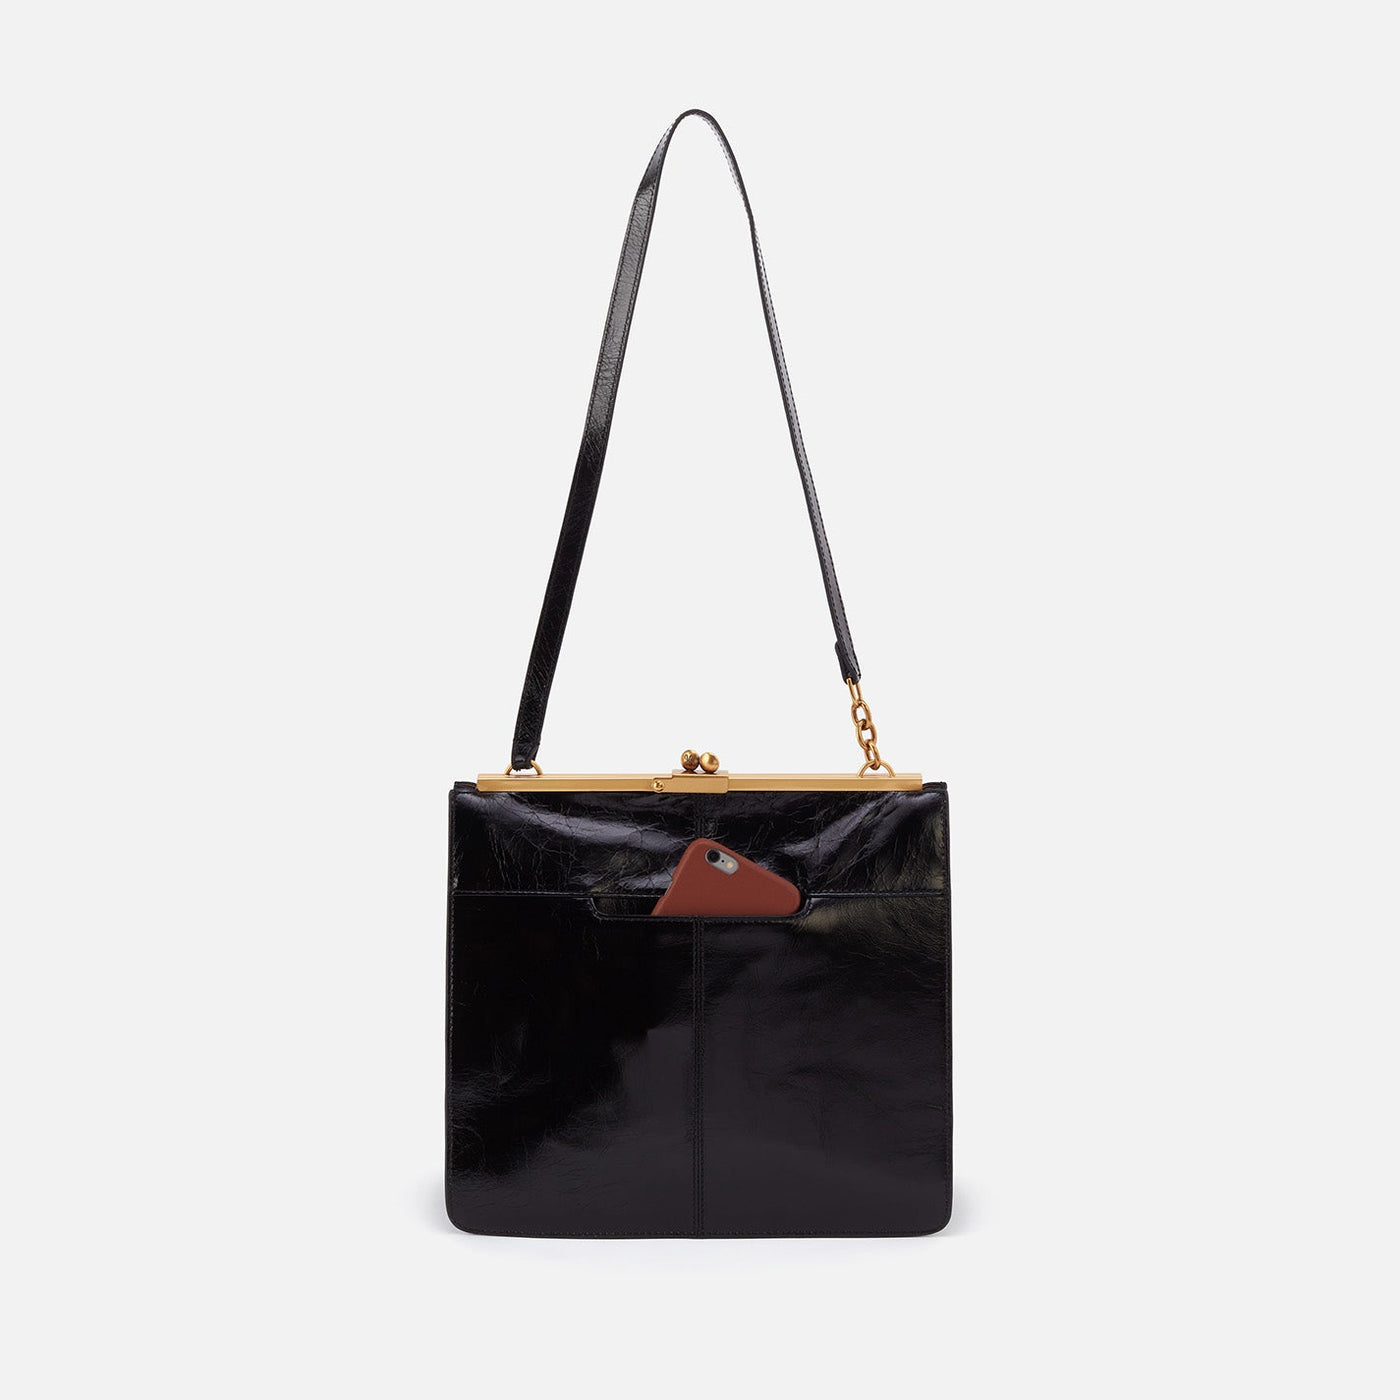 Vivian Large Shoulder Bag in Polished Leather - Black